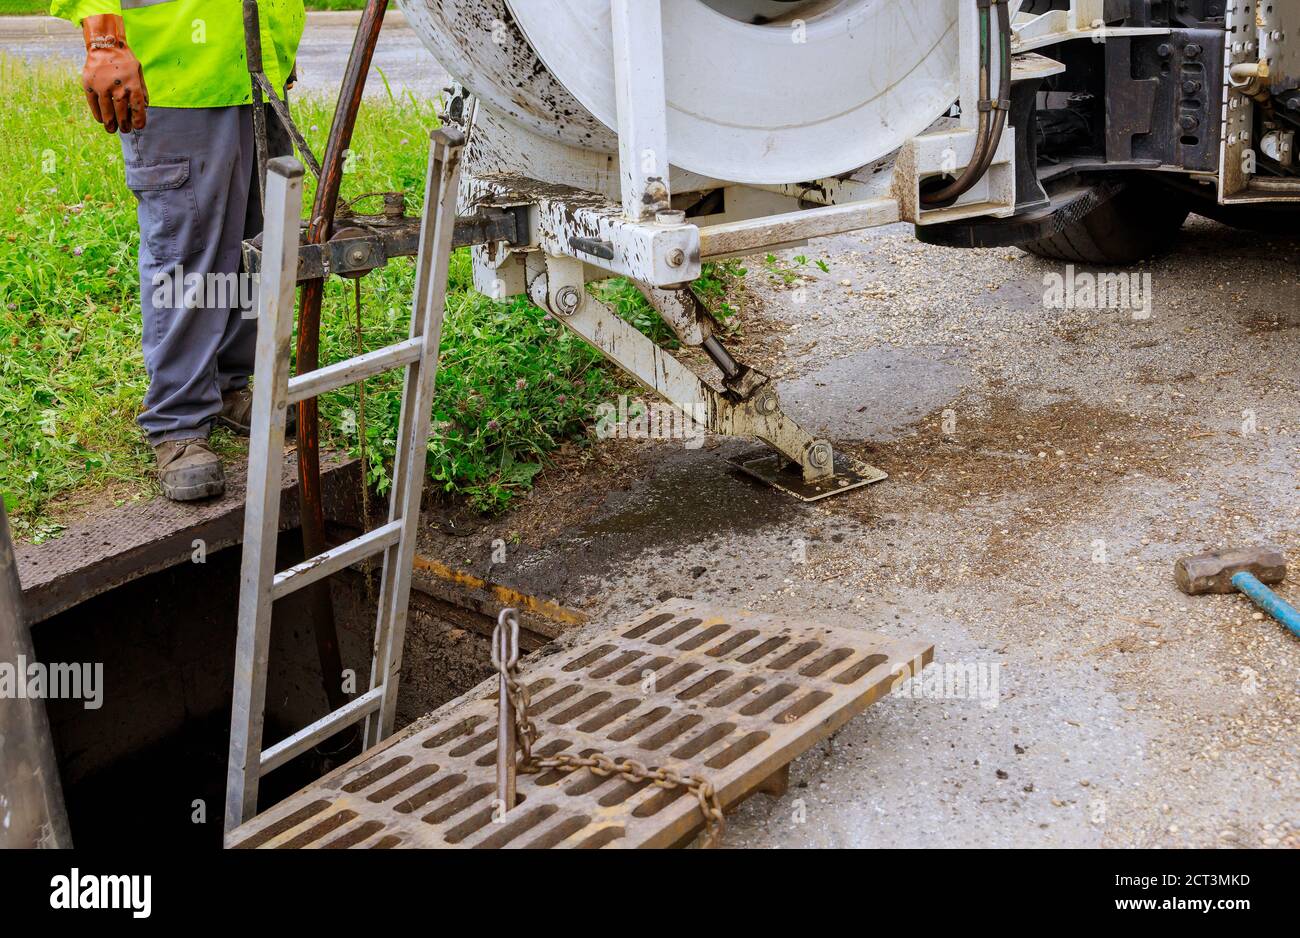 Attrezzature per la pulizia delle acque reflue con fognature su una strada cittadina su un carrello industriale Foto Stock